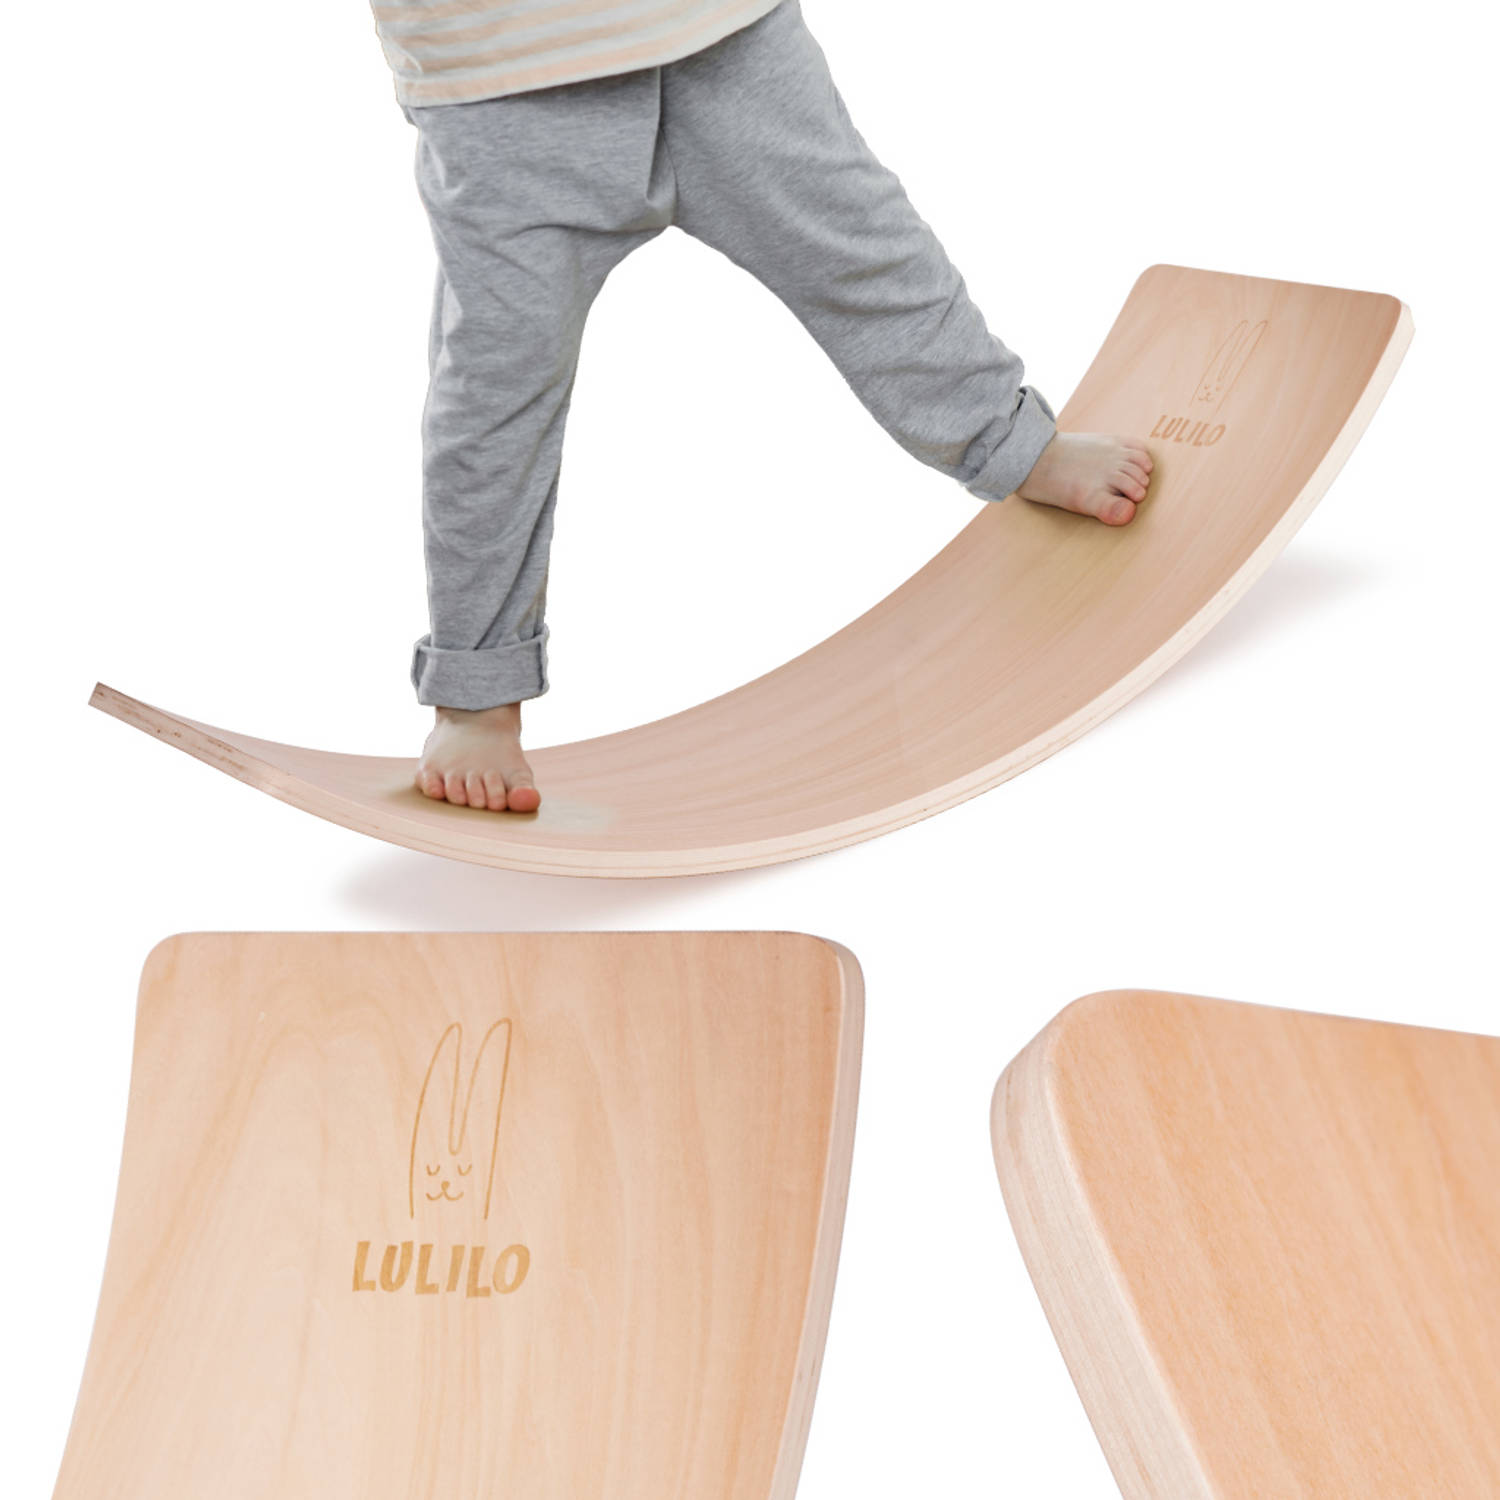 Lulilo Boldo houten balansbord - Evenwicht Balance board - Balansspeelgoed zonder vilt - Voor volwassenen en kinderen